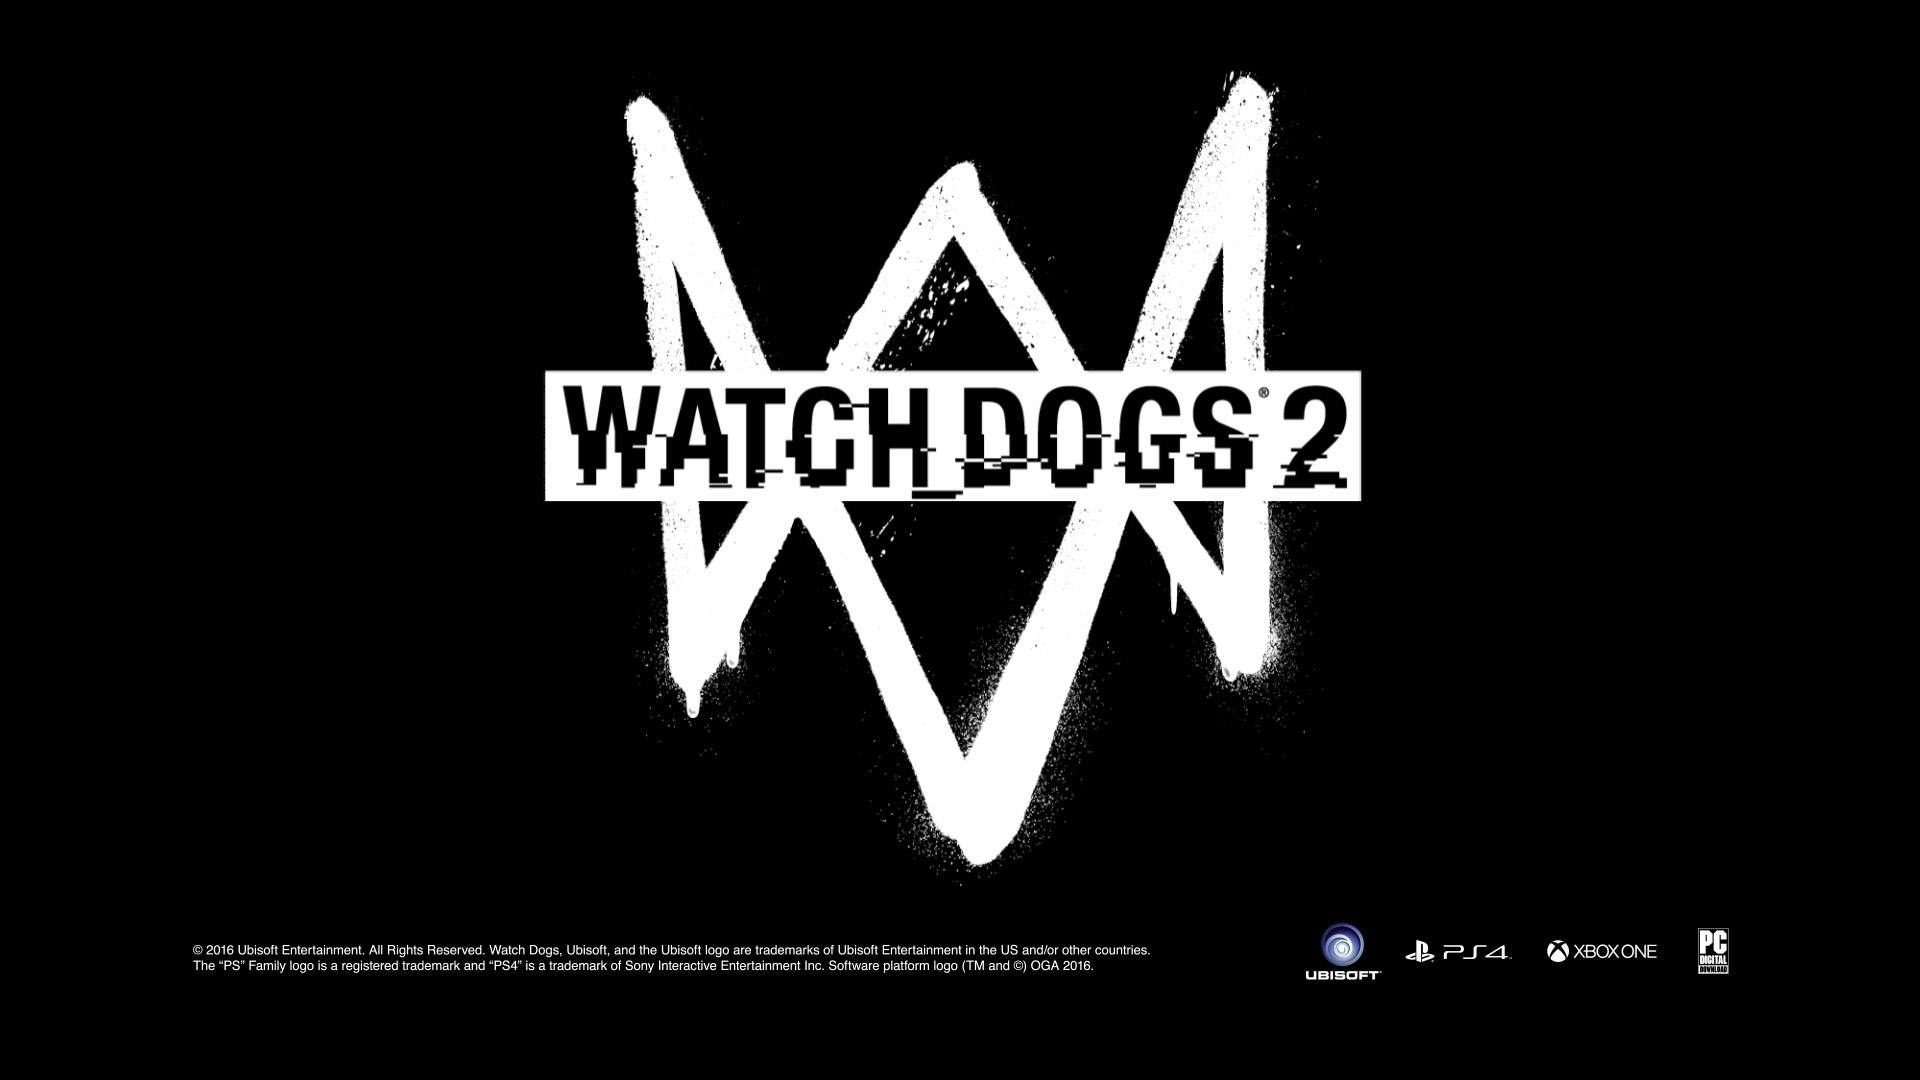  Slutkort för watch dogs 2